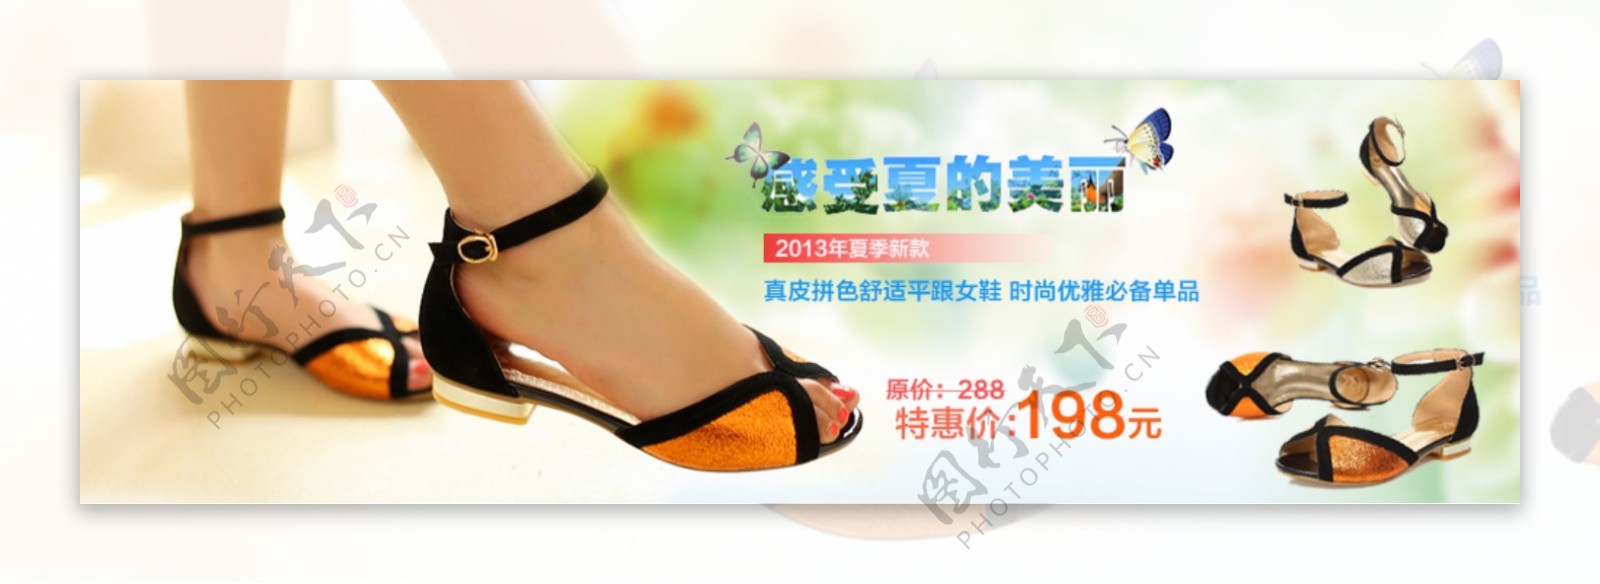 女鞋网页促销广告